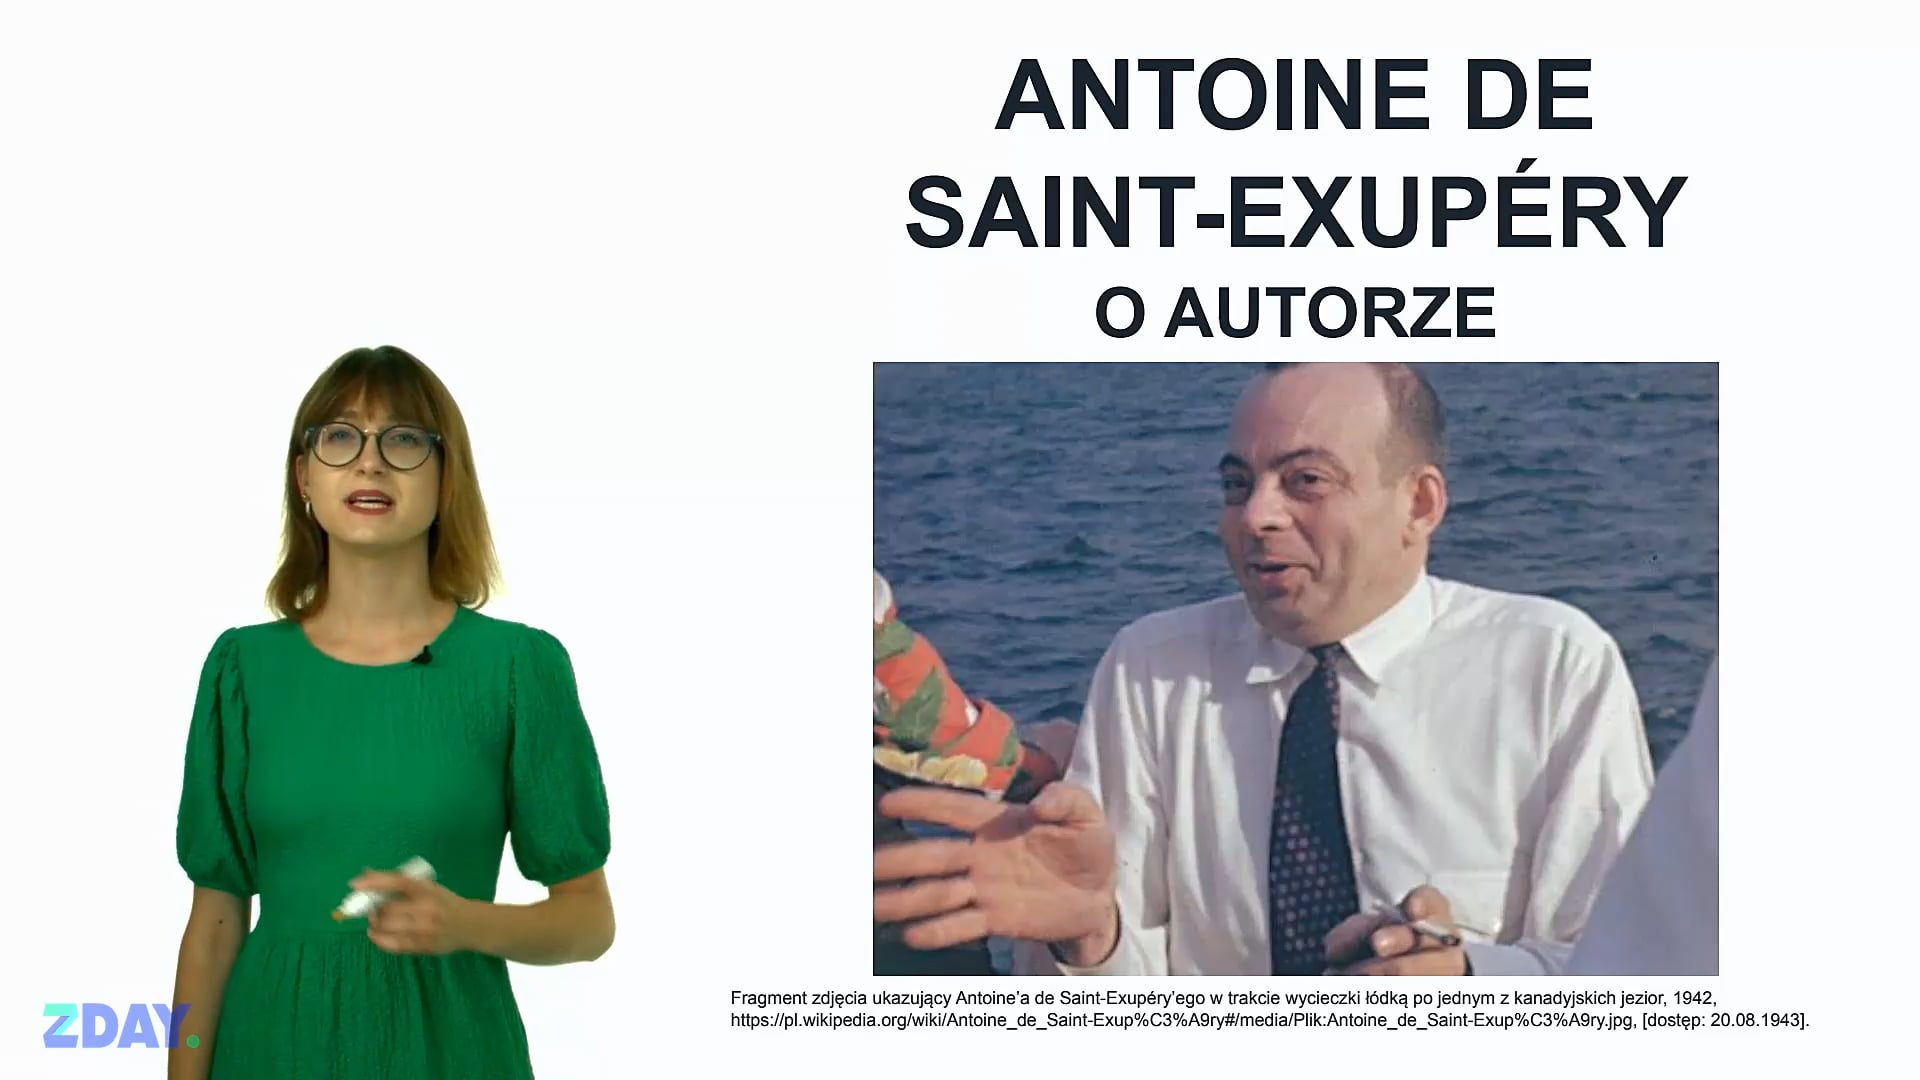 Miniaturka materiału wideo na temat: Antoine de Saint-Exupéry – o autorze. Kliknij, aby obejrzeć materiał.